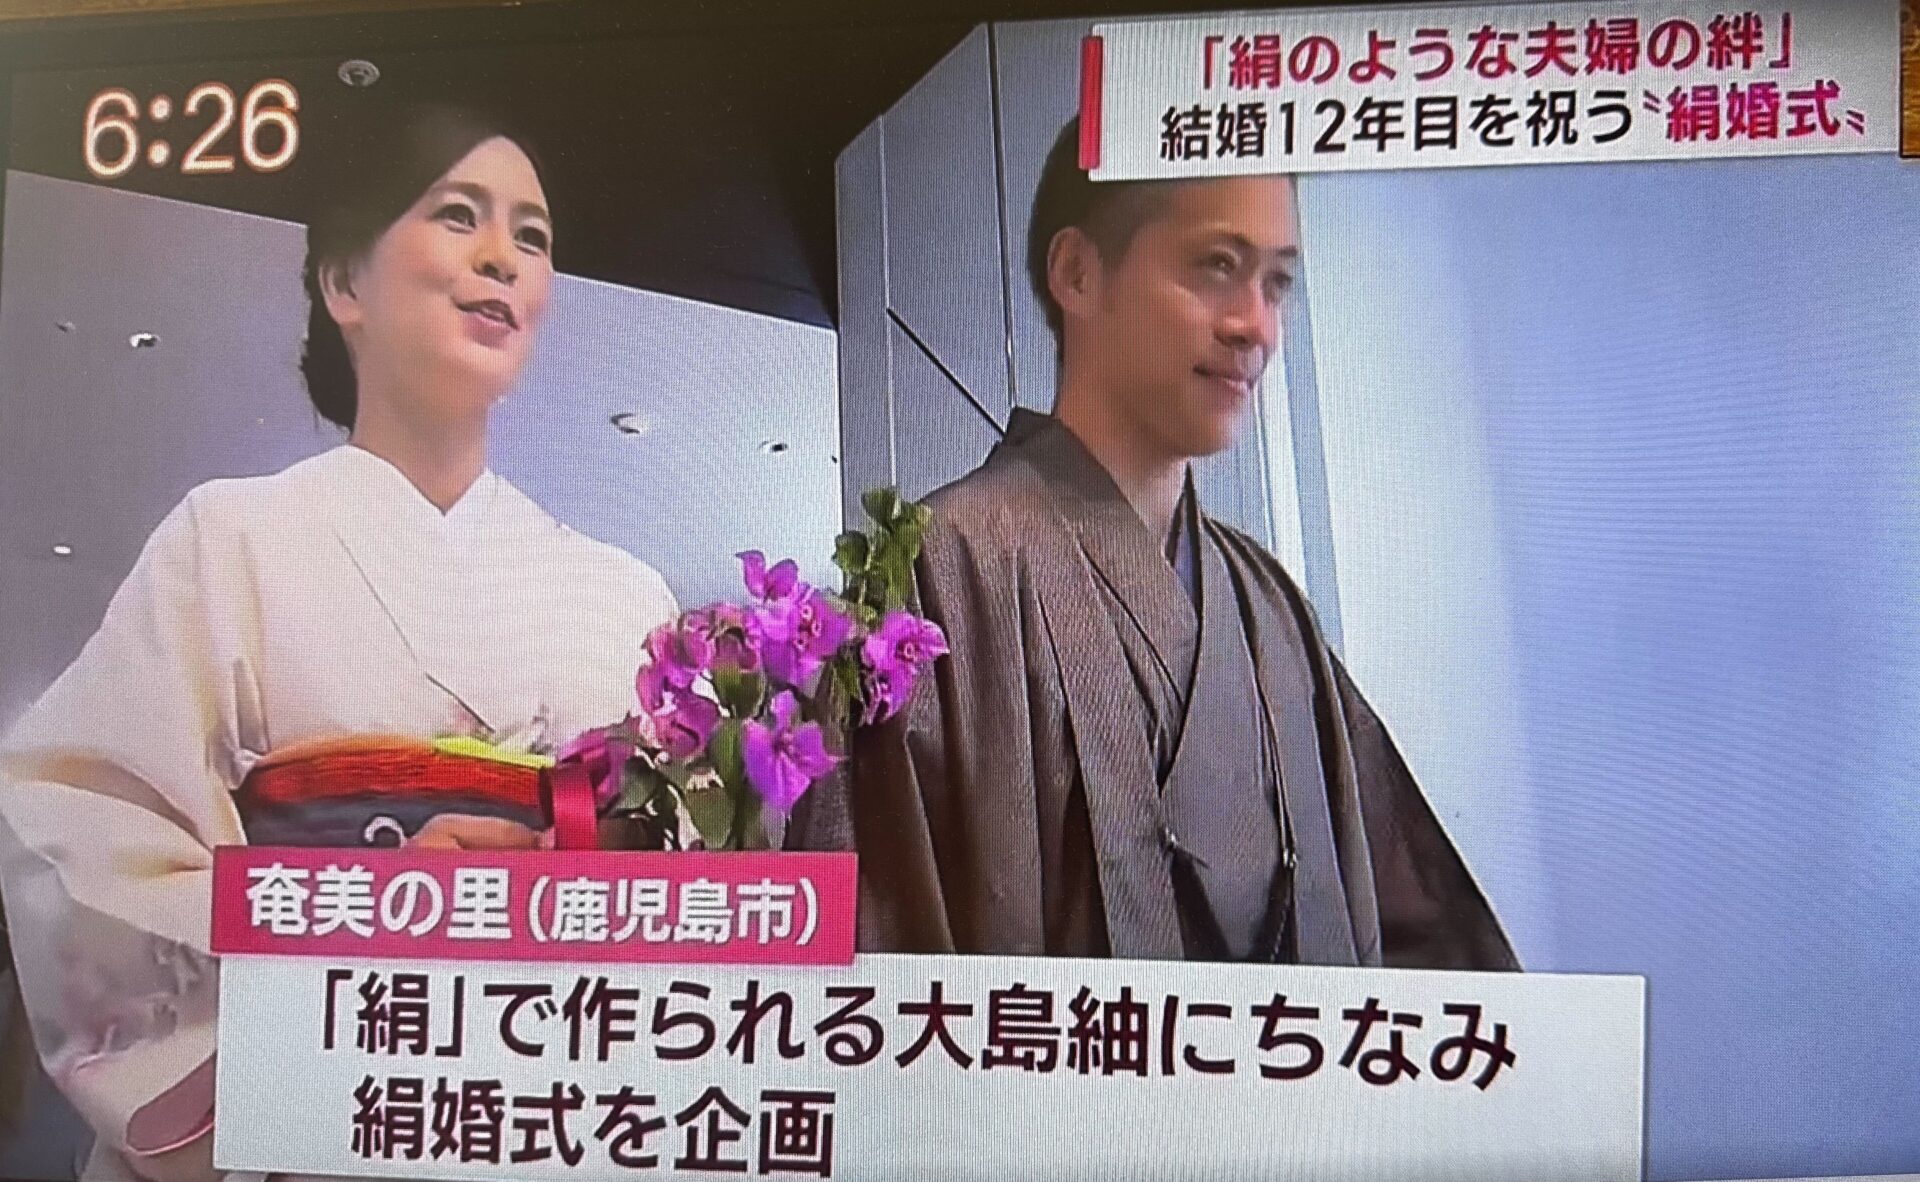 奄美の里「絹婚式」の模様がKKBにて放送されました。